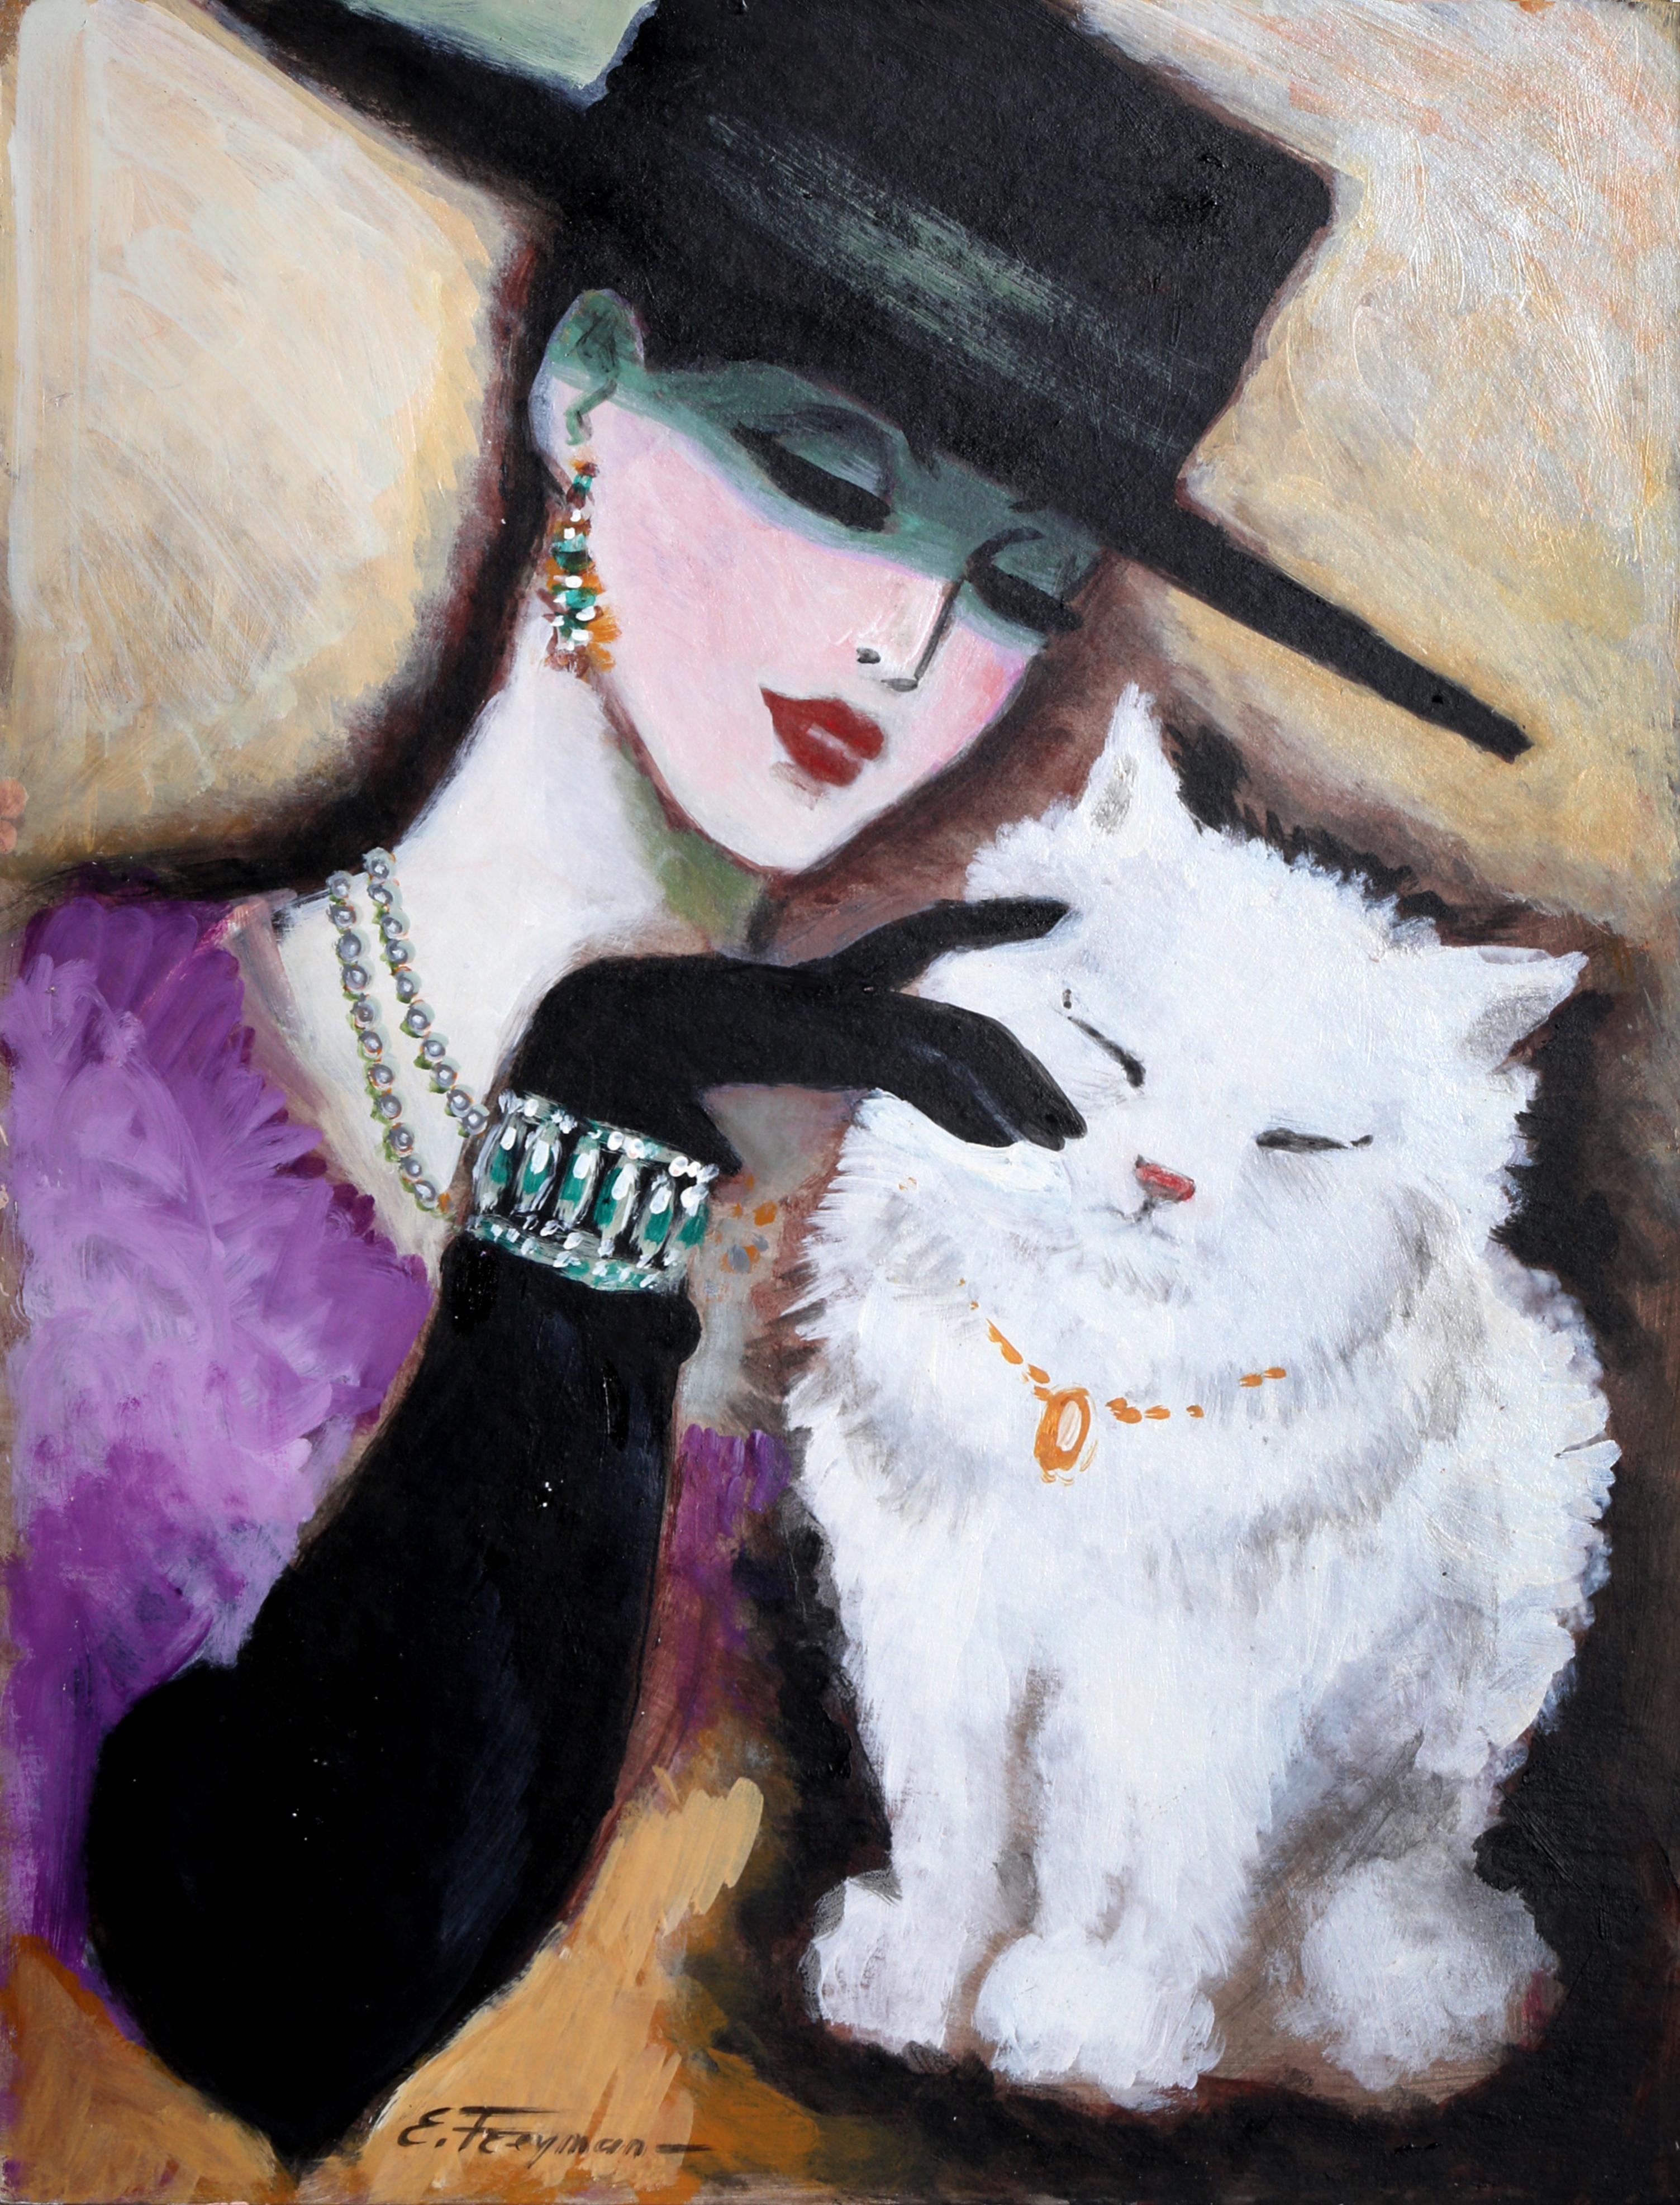 Une peinture à l'huile Art déco des années 80 représentant une dame à la mode caressant son précieux chat, réalisée par l'artiste contemporain Erik Freyman. L'œuvre est signée en bas à gauche et n'est pas encadrée.

Chat blanc
Erik Freyman, Russe